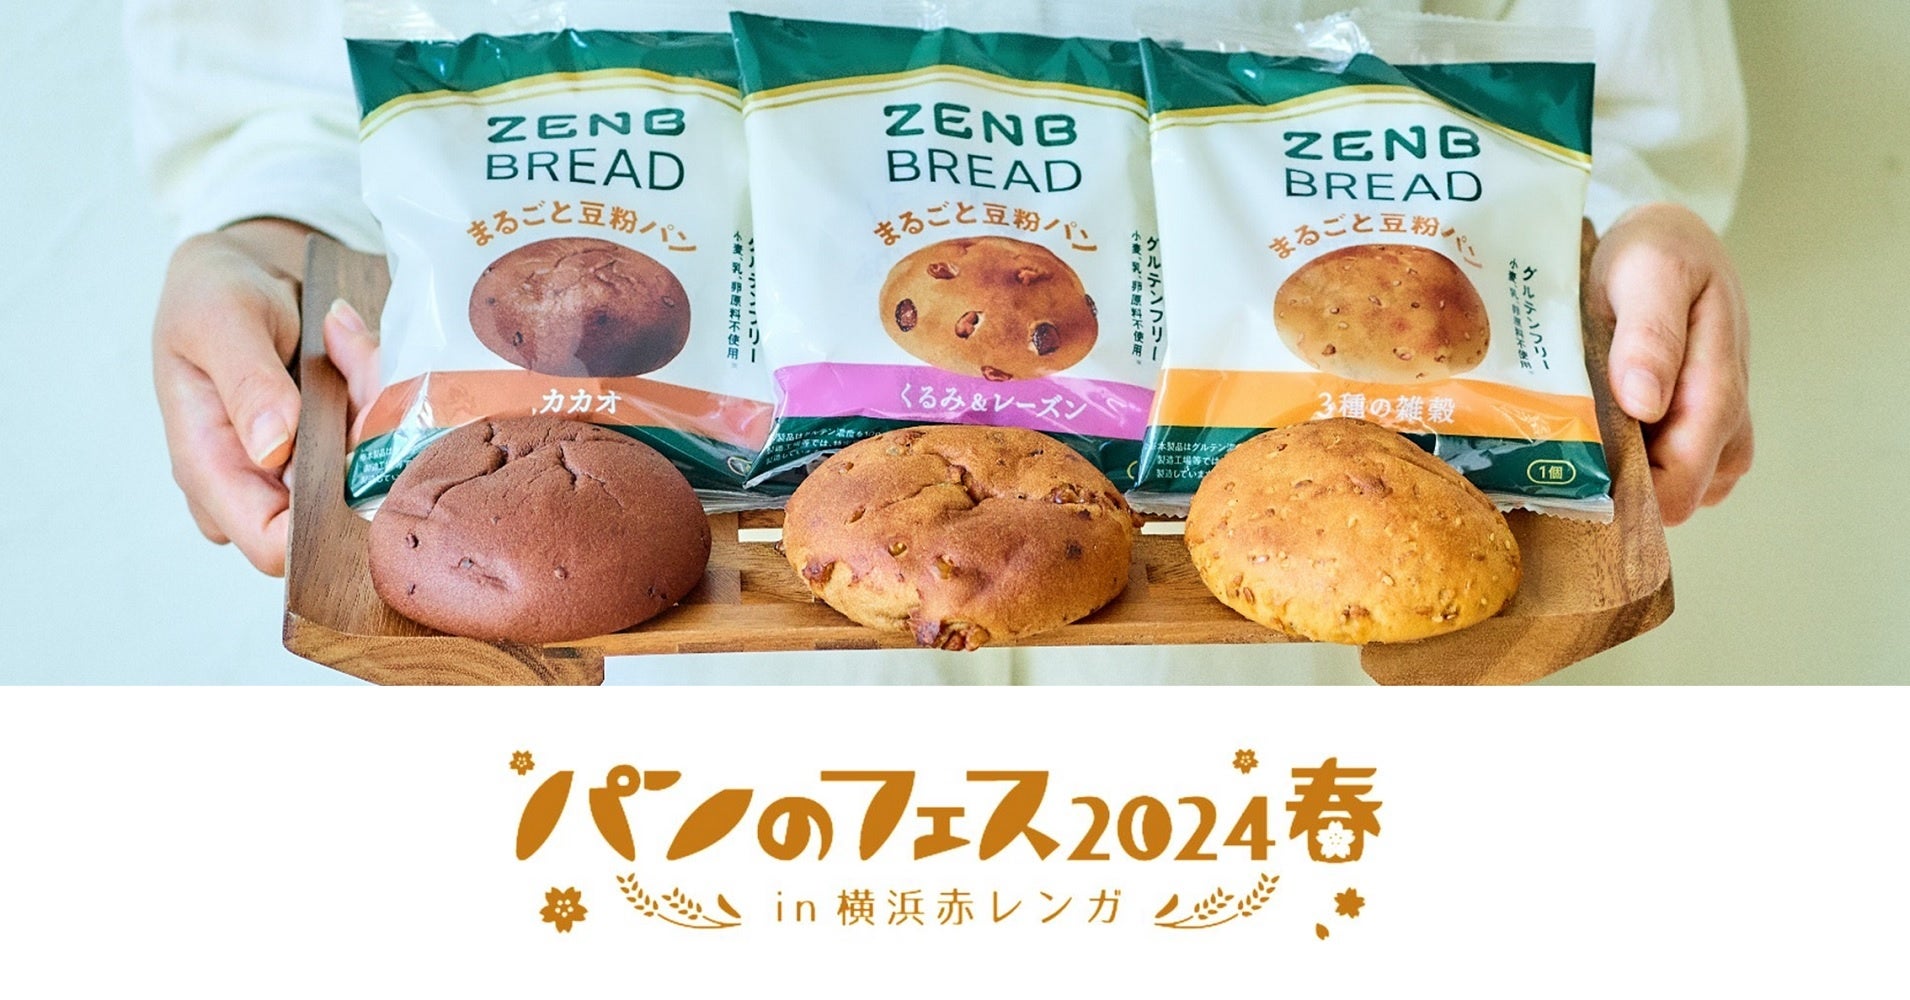 「パンのフェス2024春」にグルテンフリーのまるごと豆粉パン「ZENBブレッド」が登場